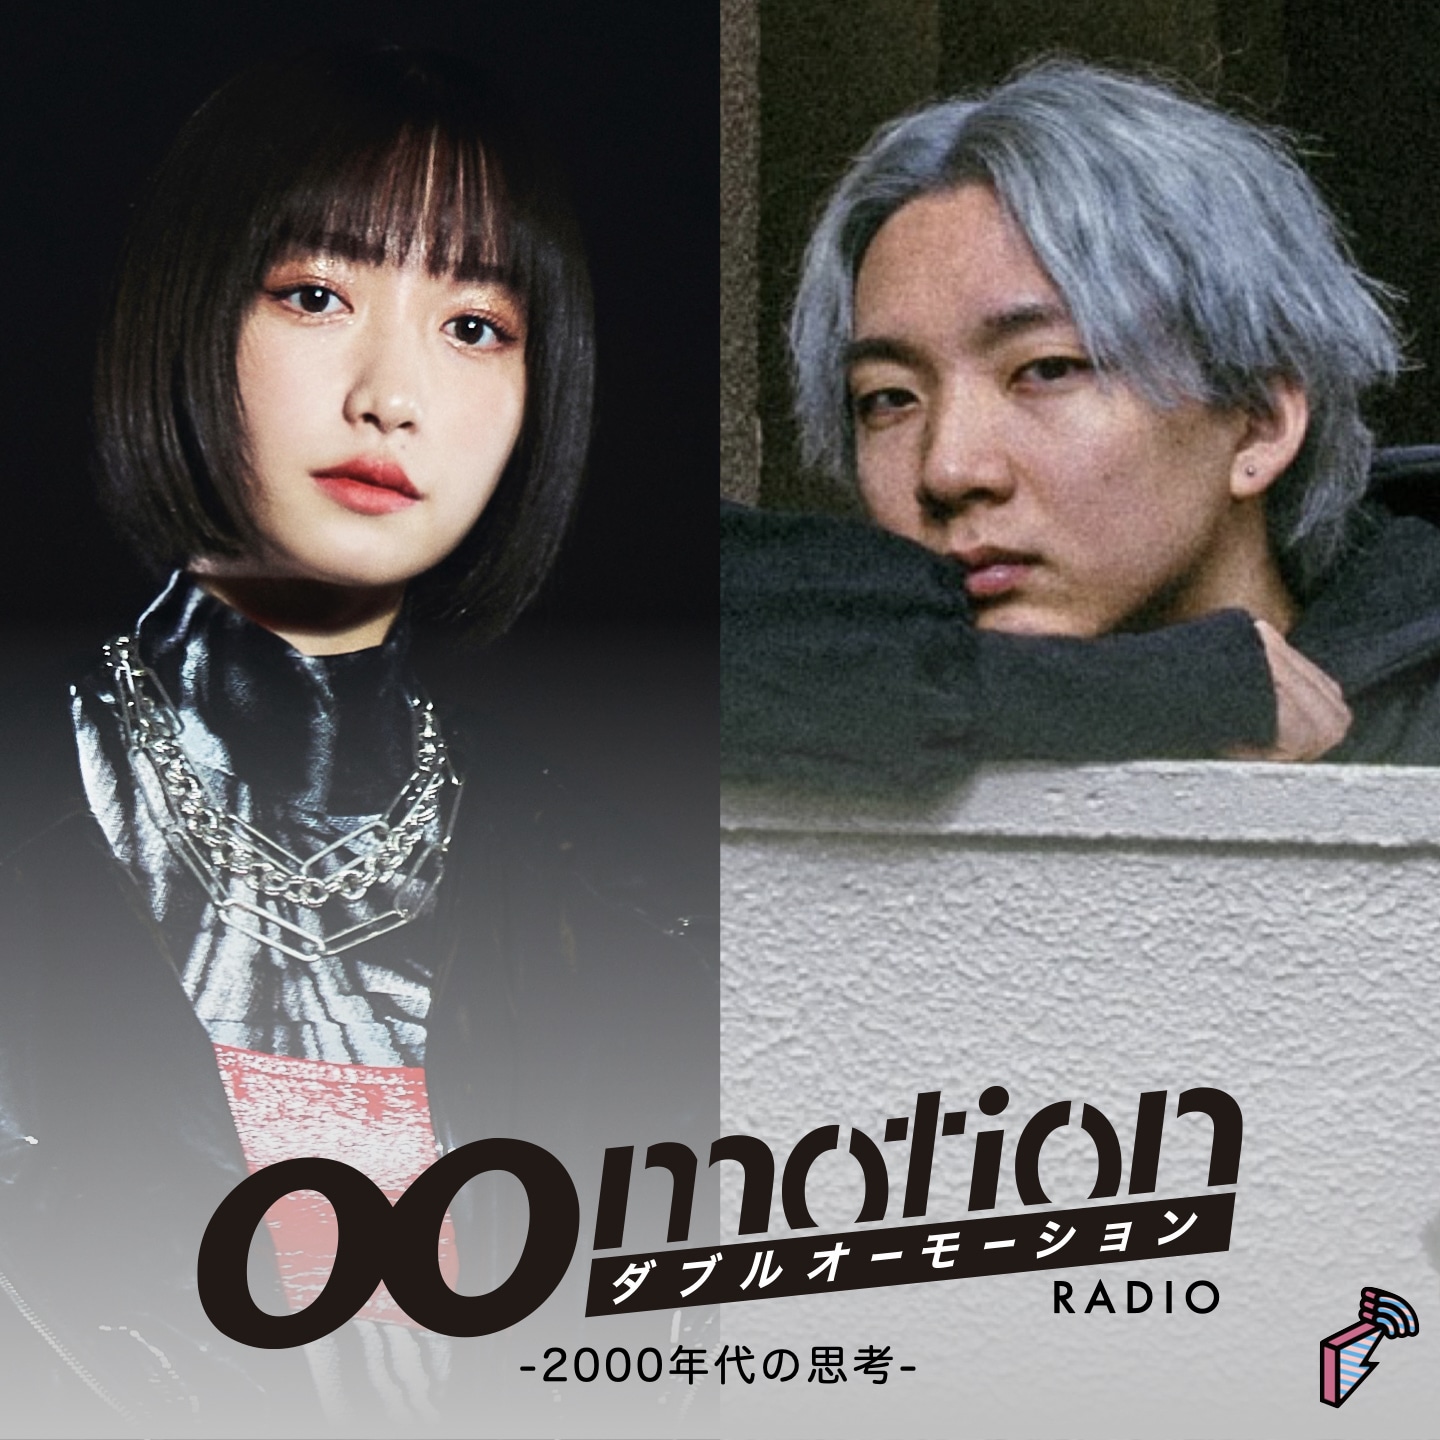 00motion Radio ~2000年代生まれの思考~ | block.fm